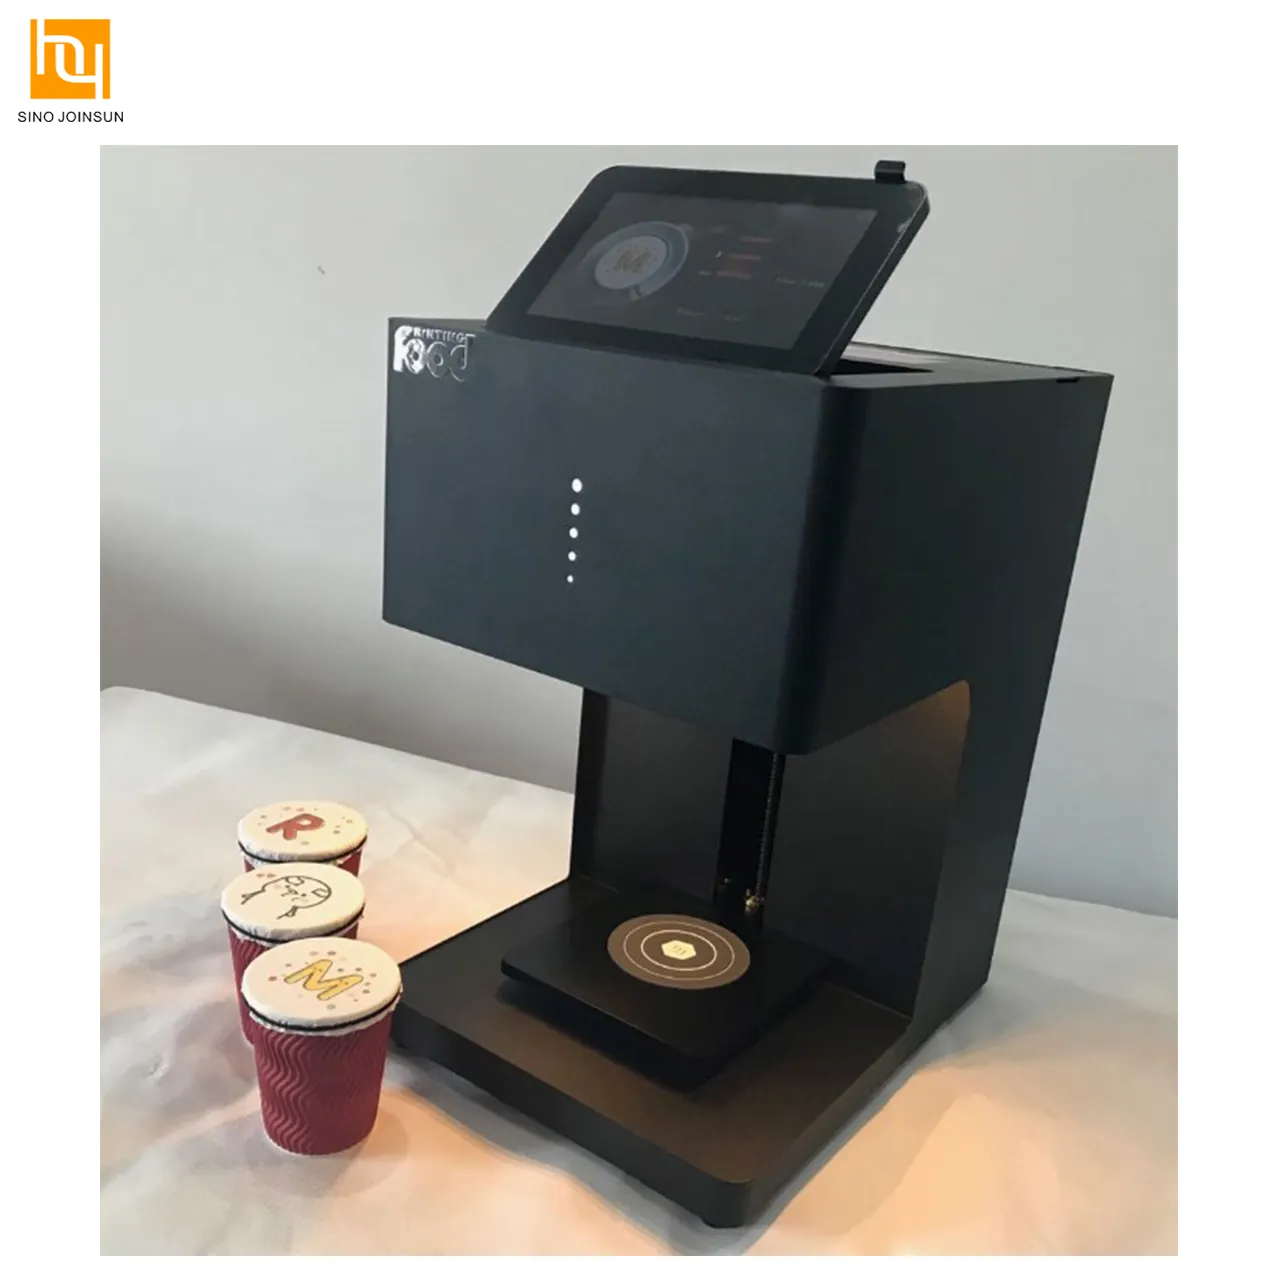 الصالحة للأكل طابعة كيك آلة للطباعة الوجه على القهوة